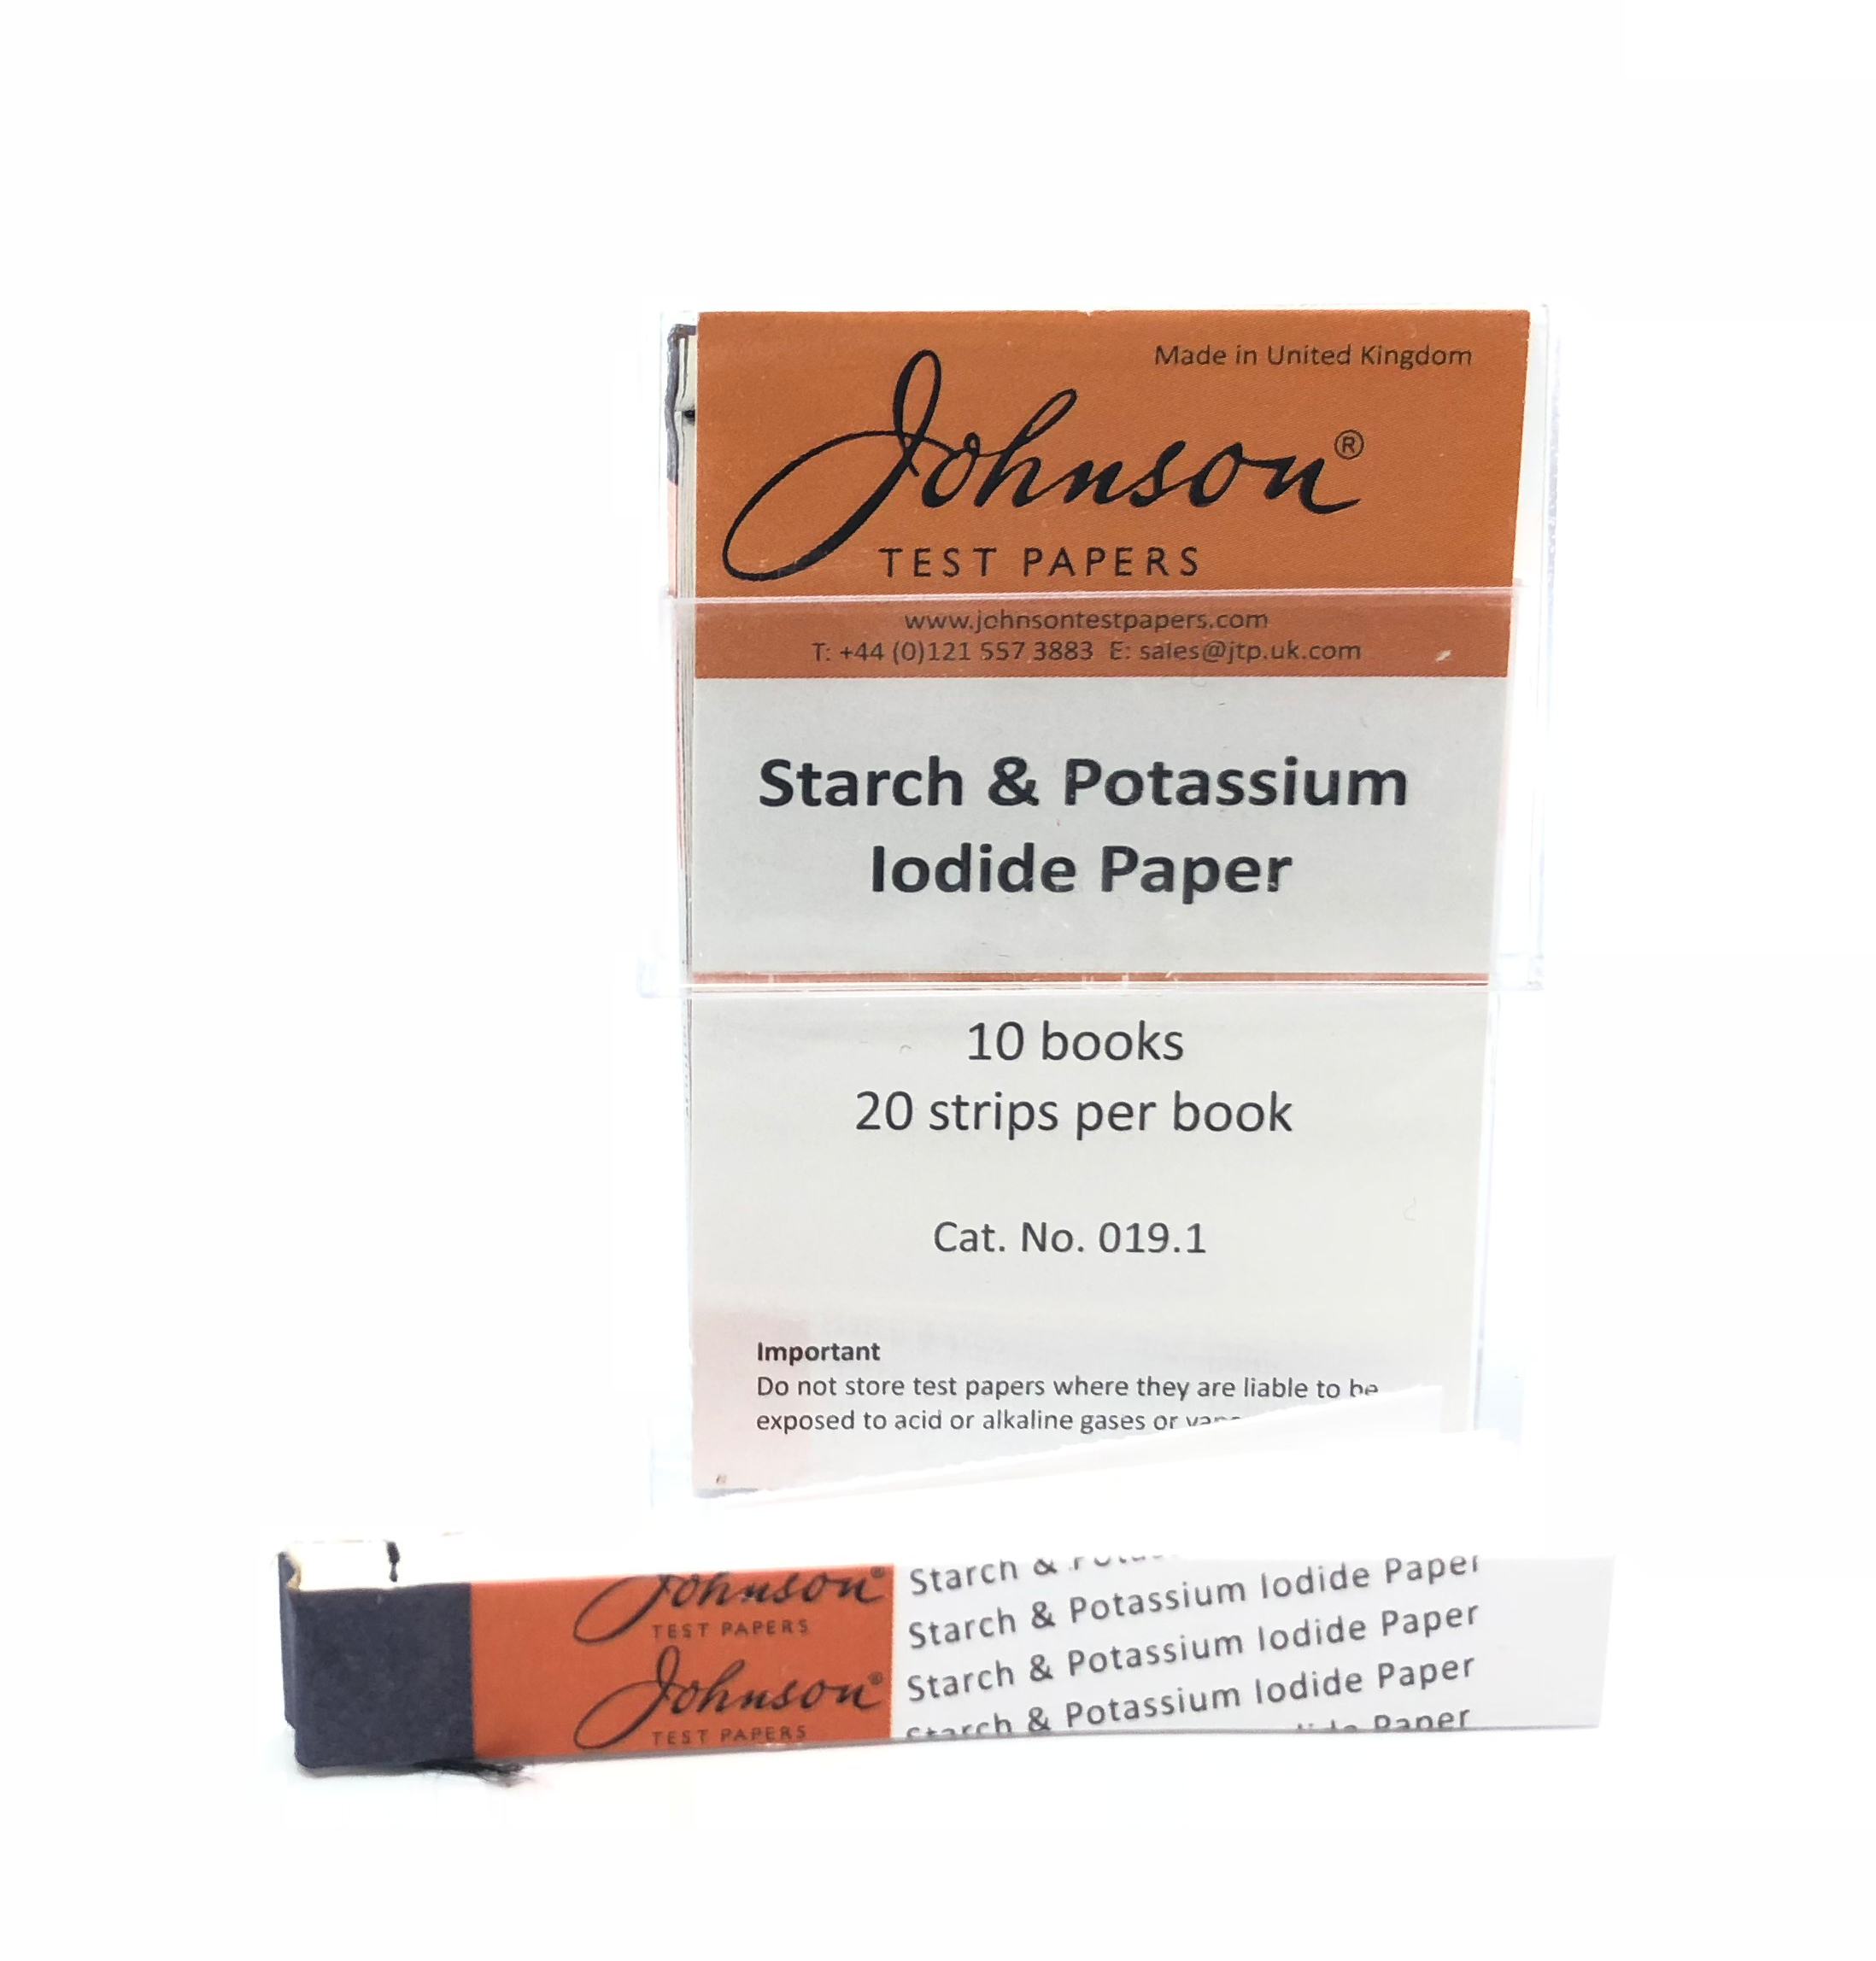 Starch & Potassium Iodide Paper